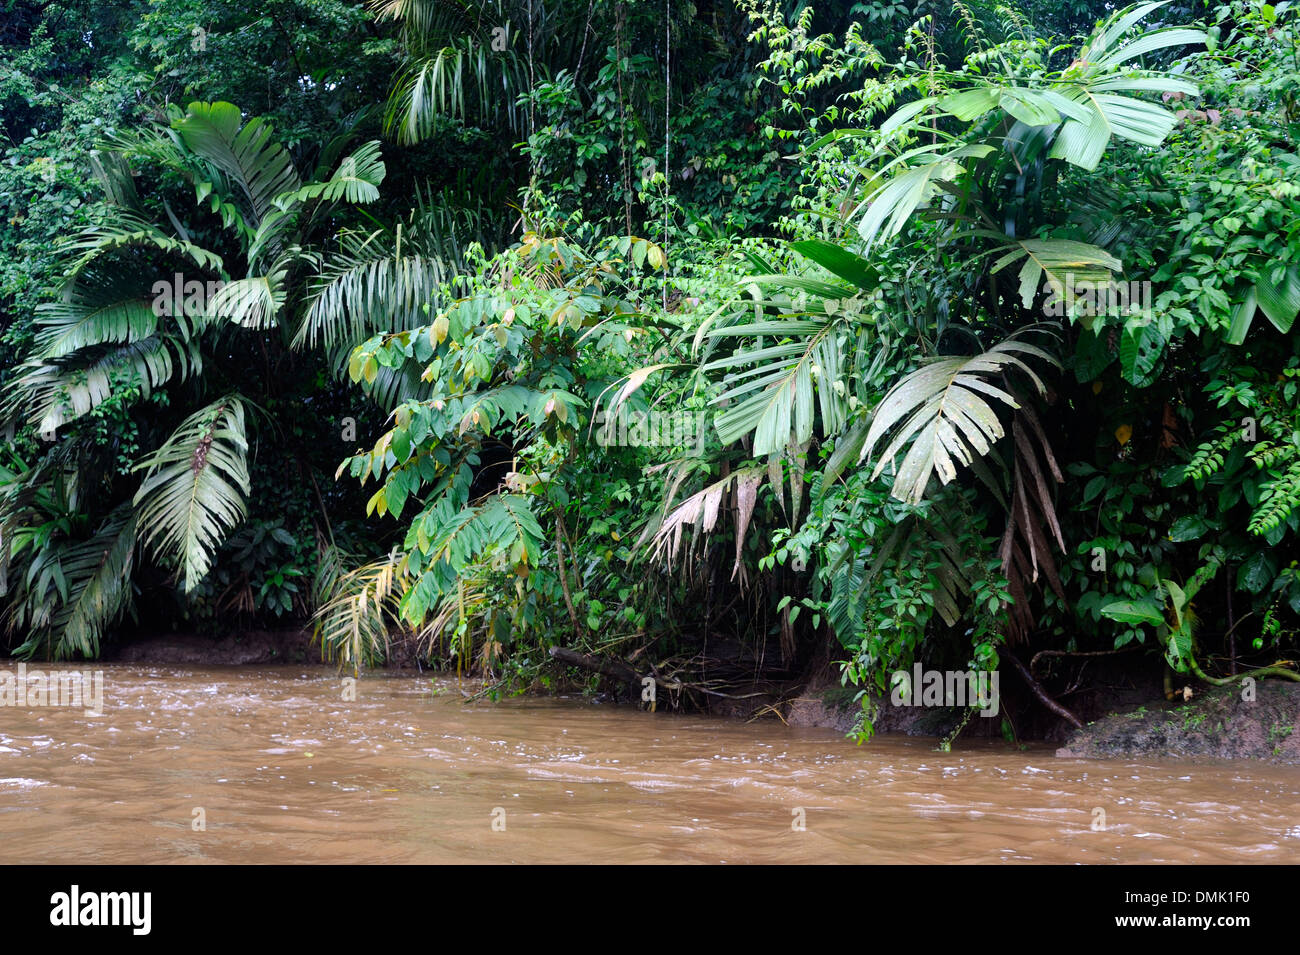 La végétation de la forêt tropicale luxuriante pousse sur les berges d'une rivière dans le Parc National de Tortuguero. Tortuguero, Limon Province, Banque D'Images